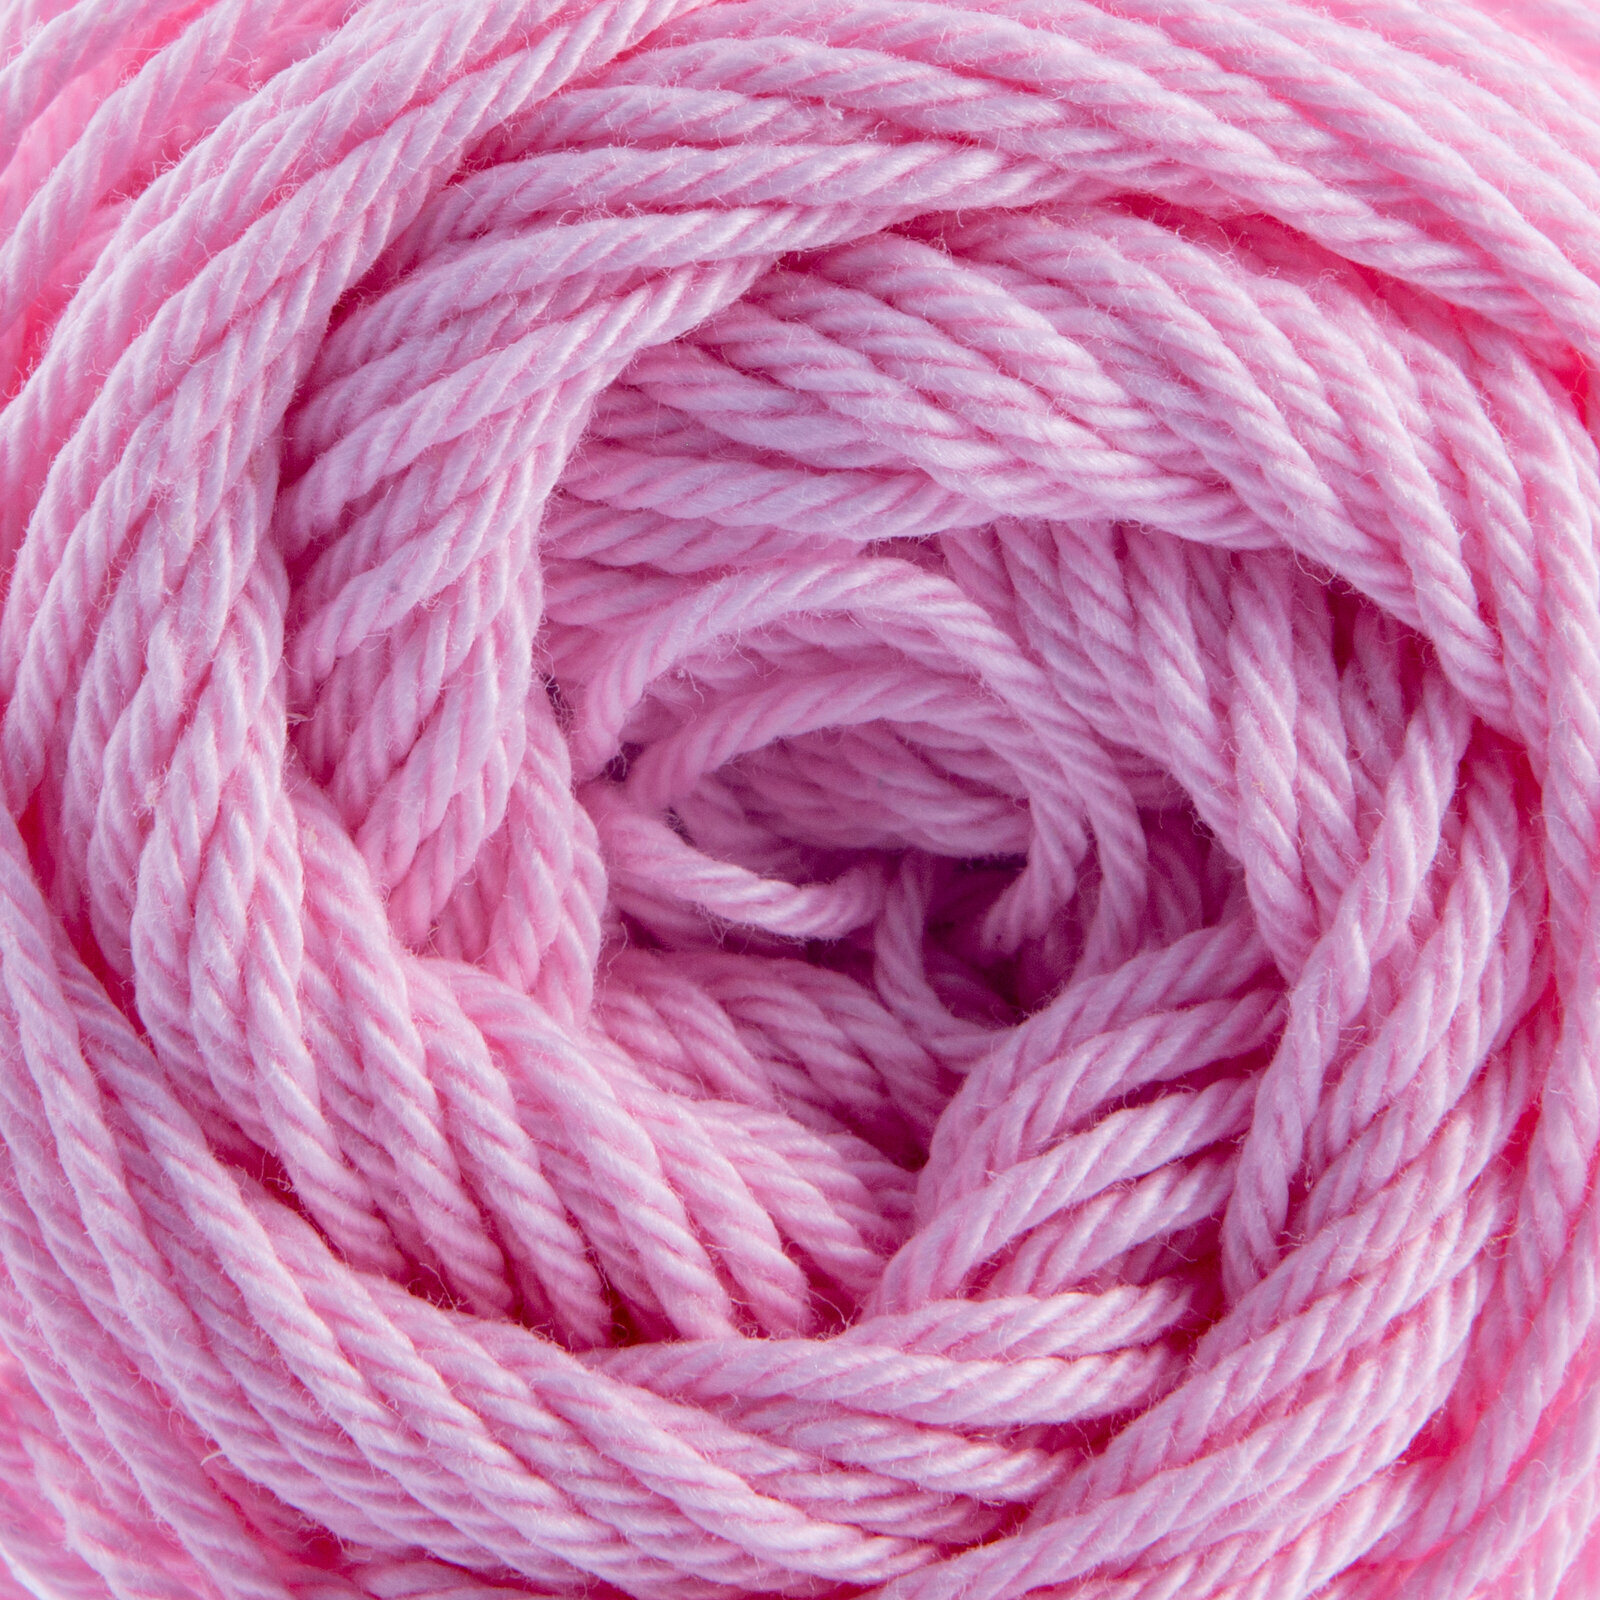 Knitting Yarn Nitarna Ceska Trebova Silva 3324 Light Pink